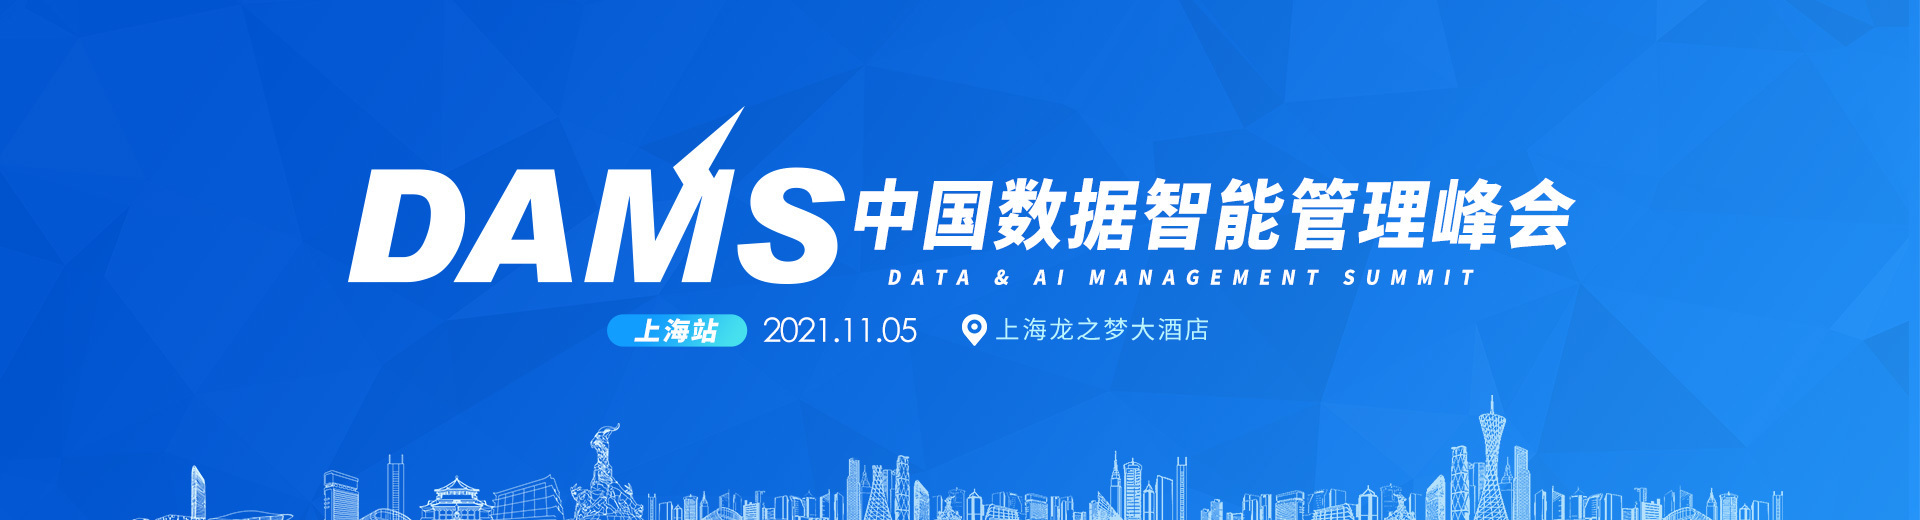 2021年DAMS中国数据智能管理峰会-上海站